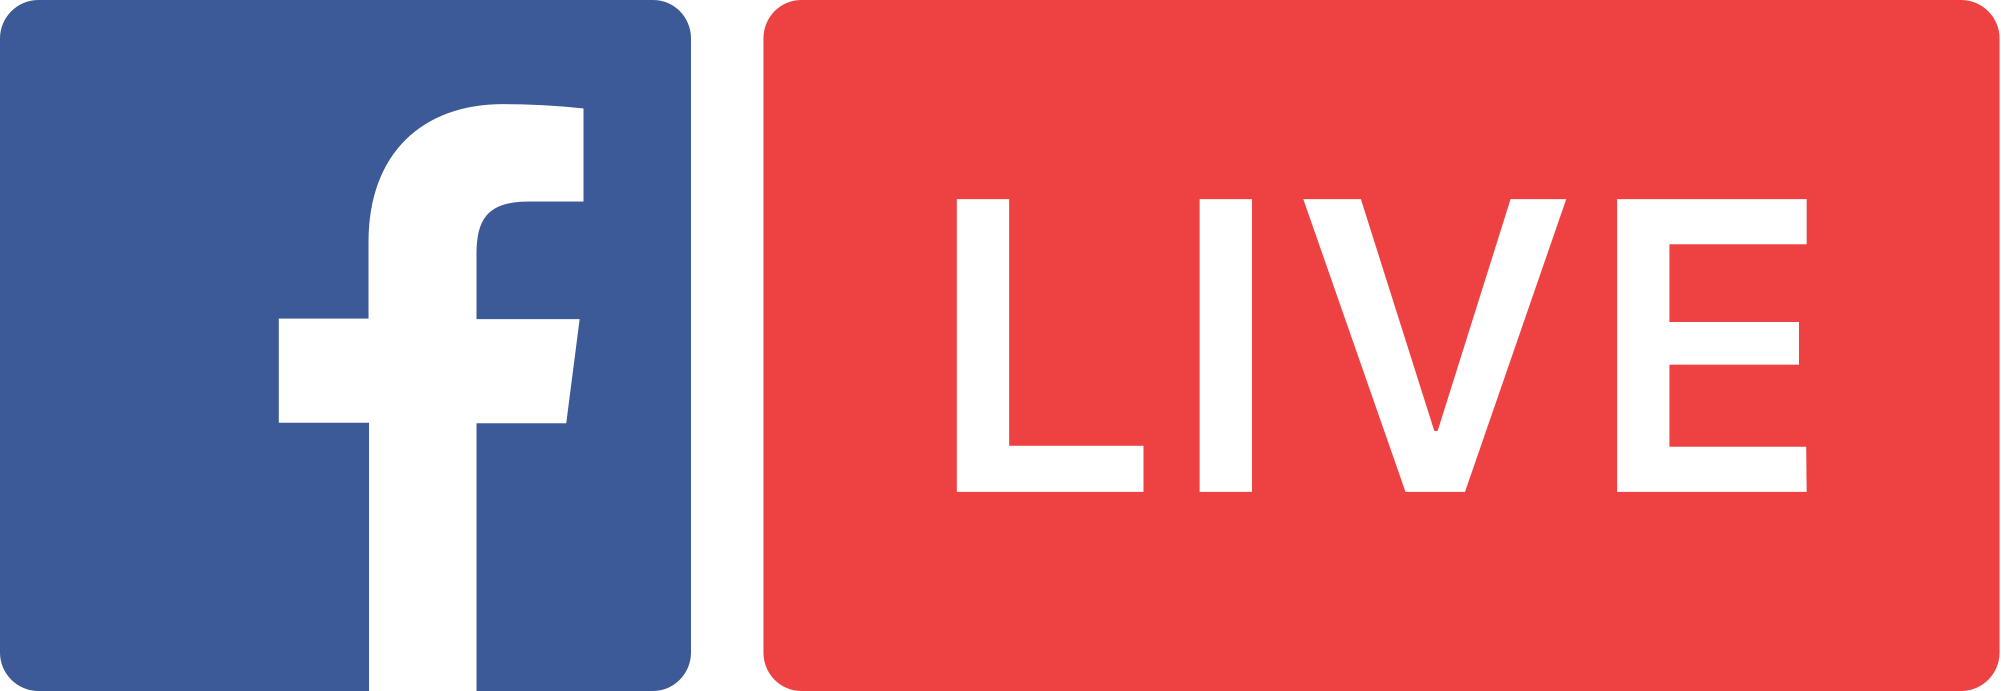 Facebook Live - network